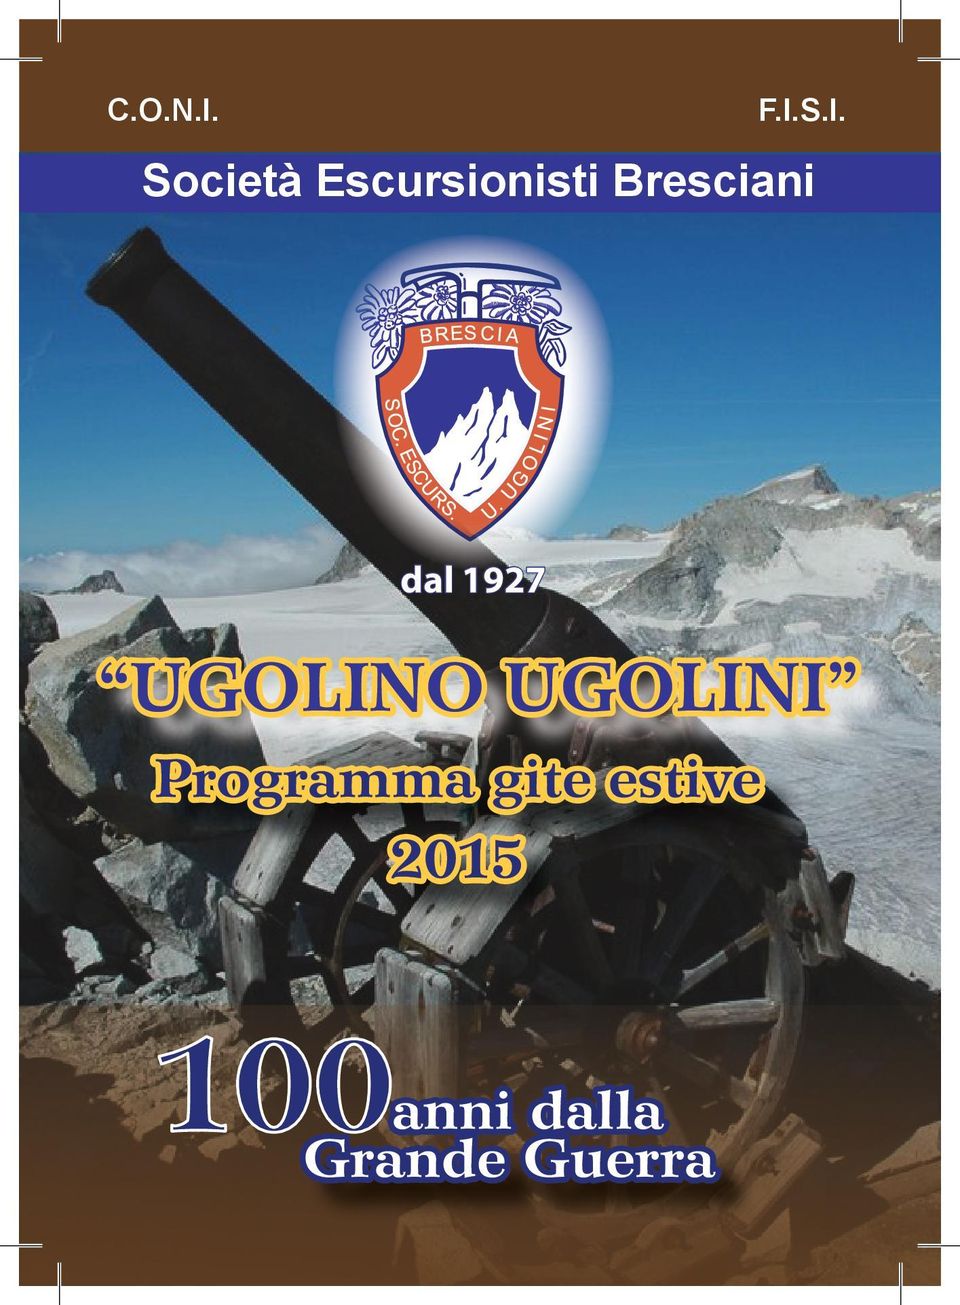 Bresciani dal 1927 UGOLINO